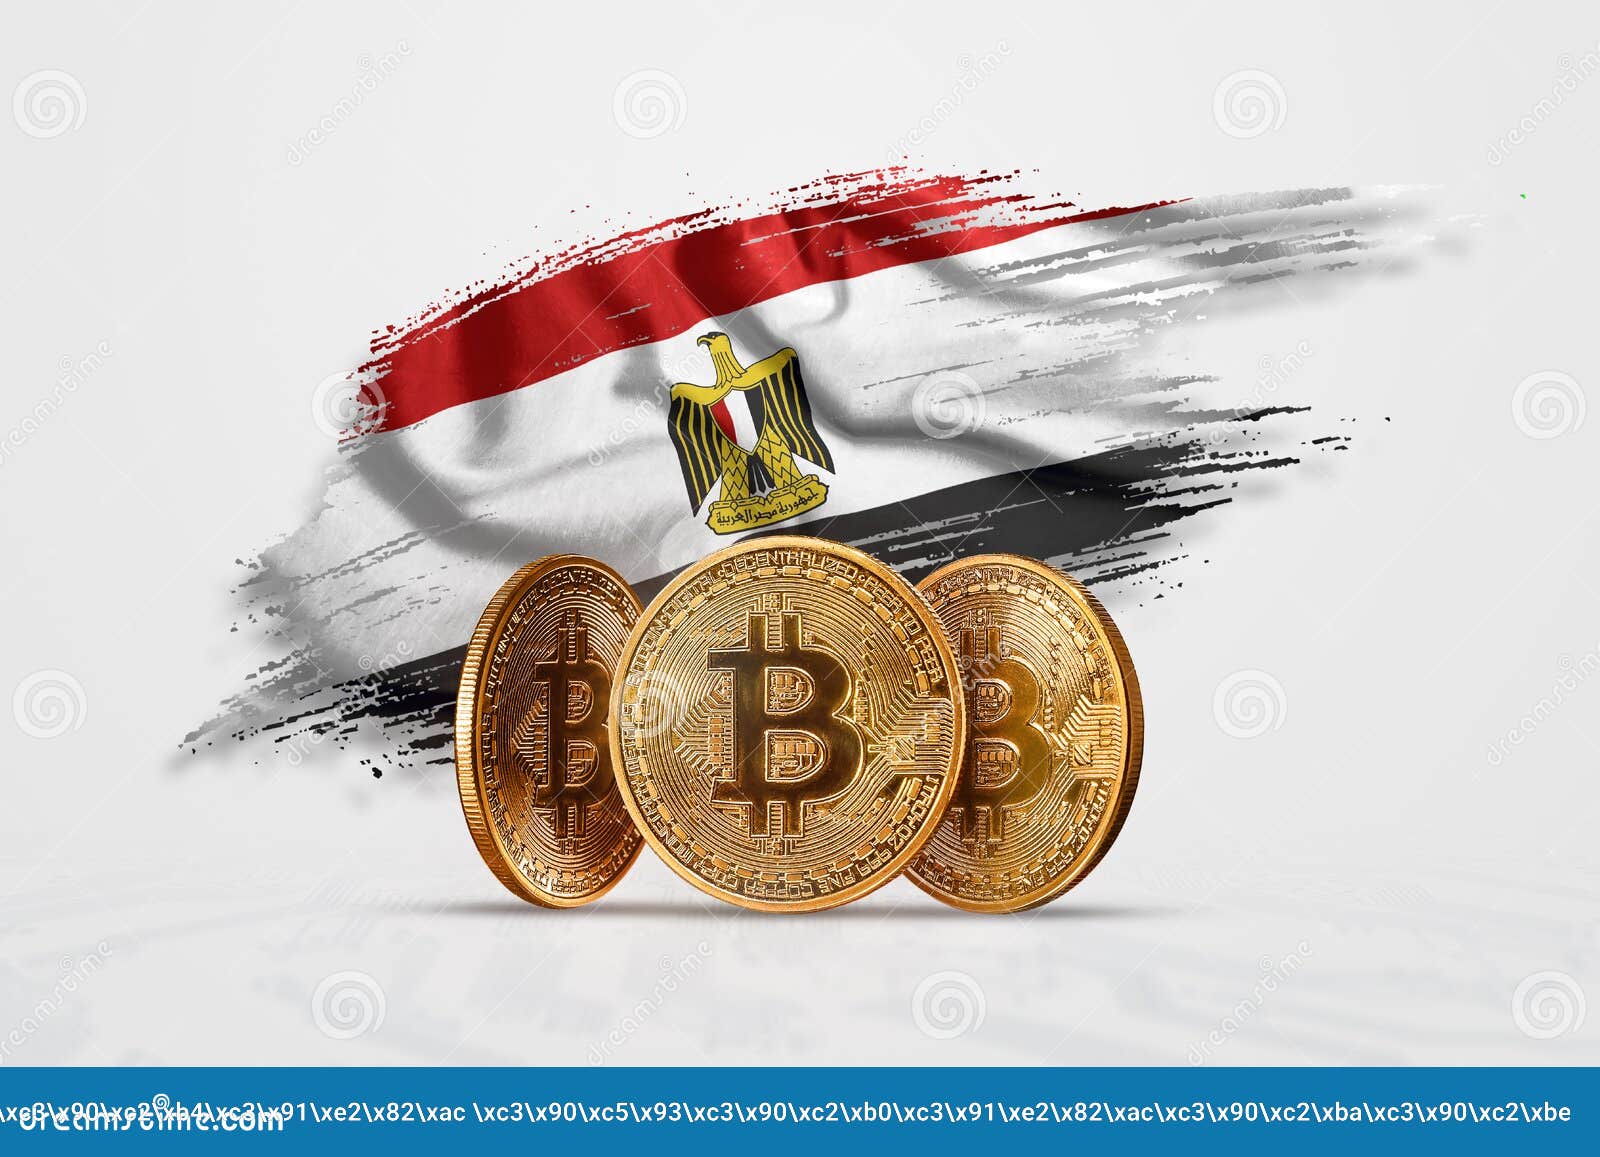 egipto bitcoin